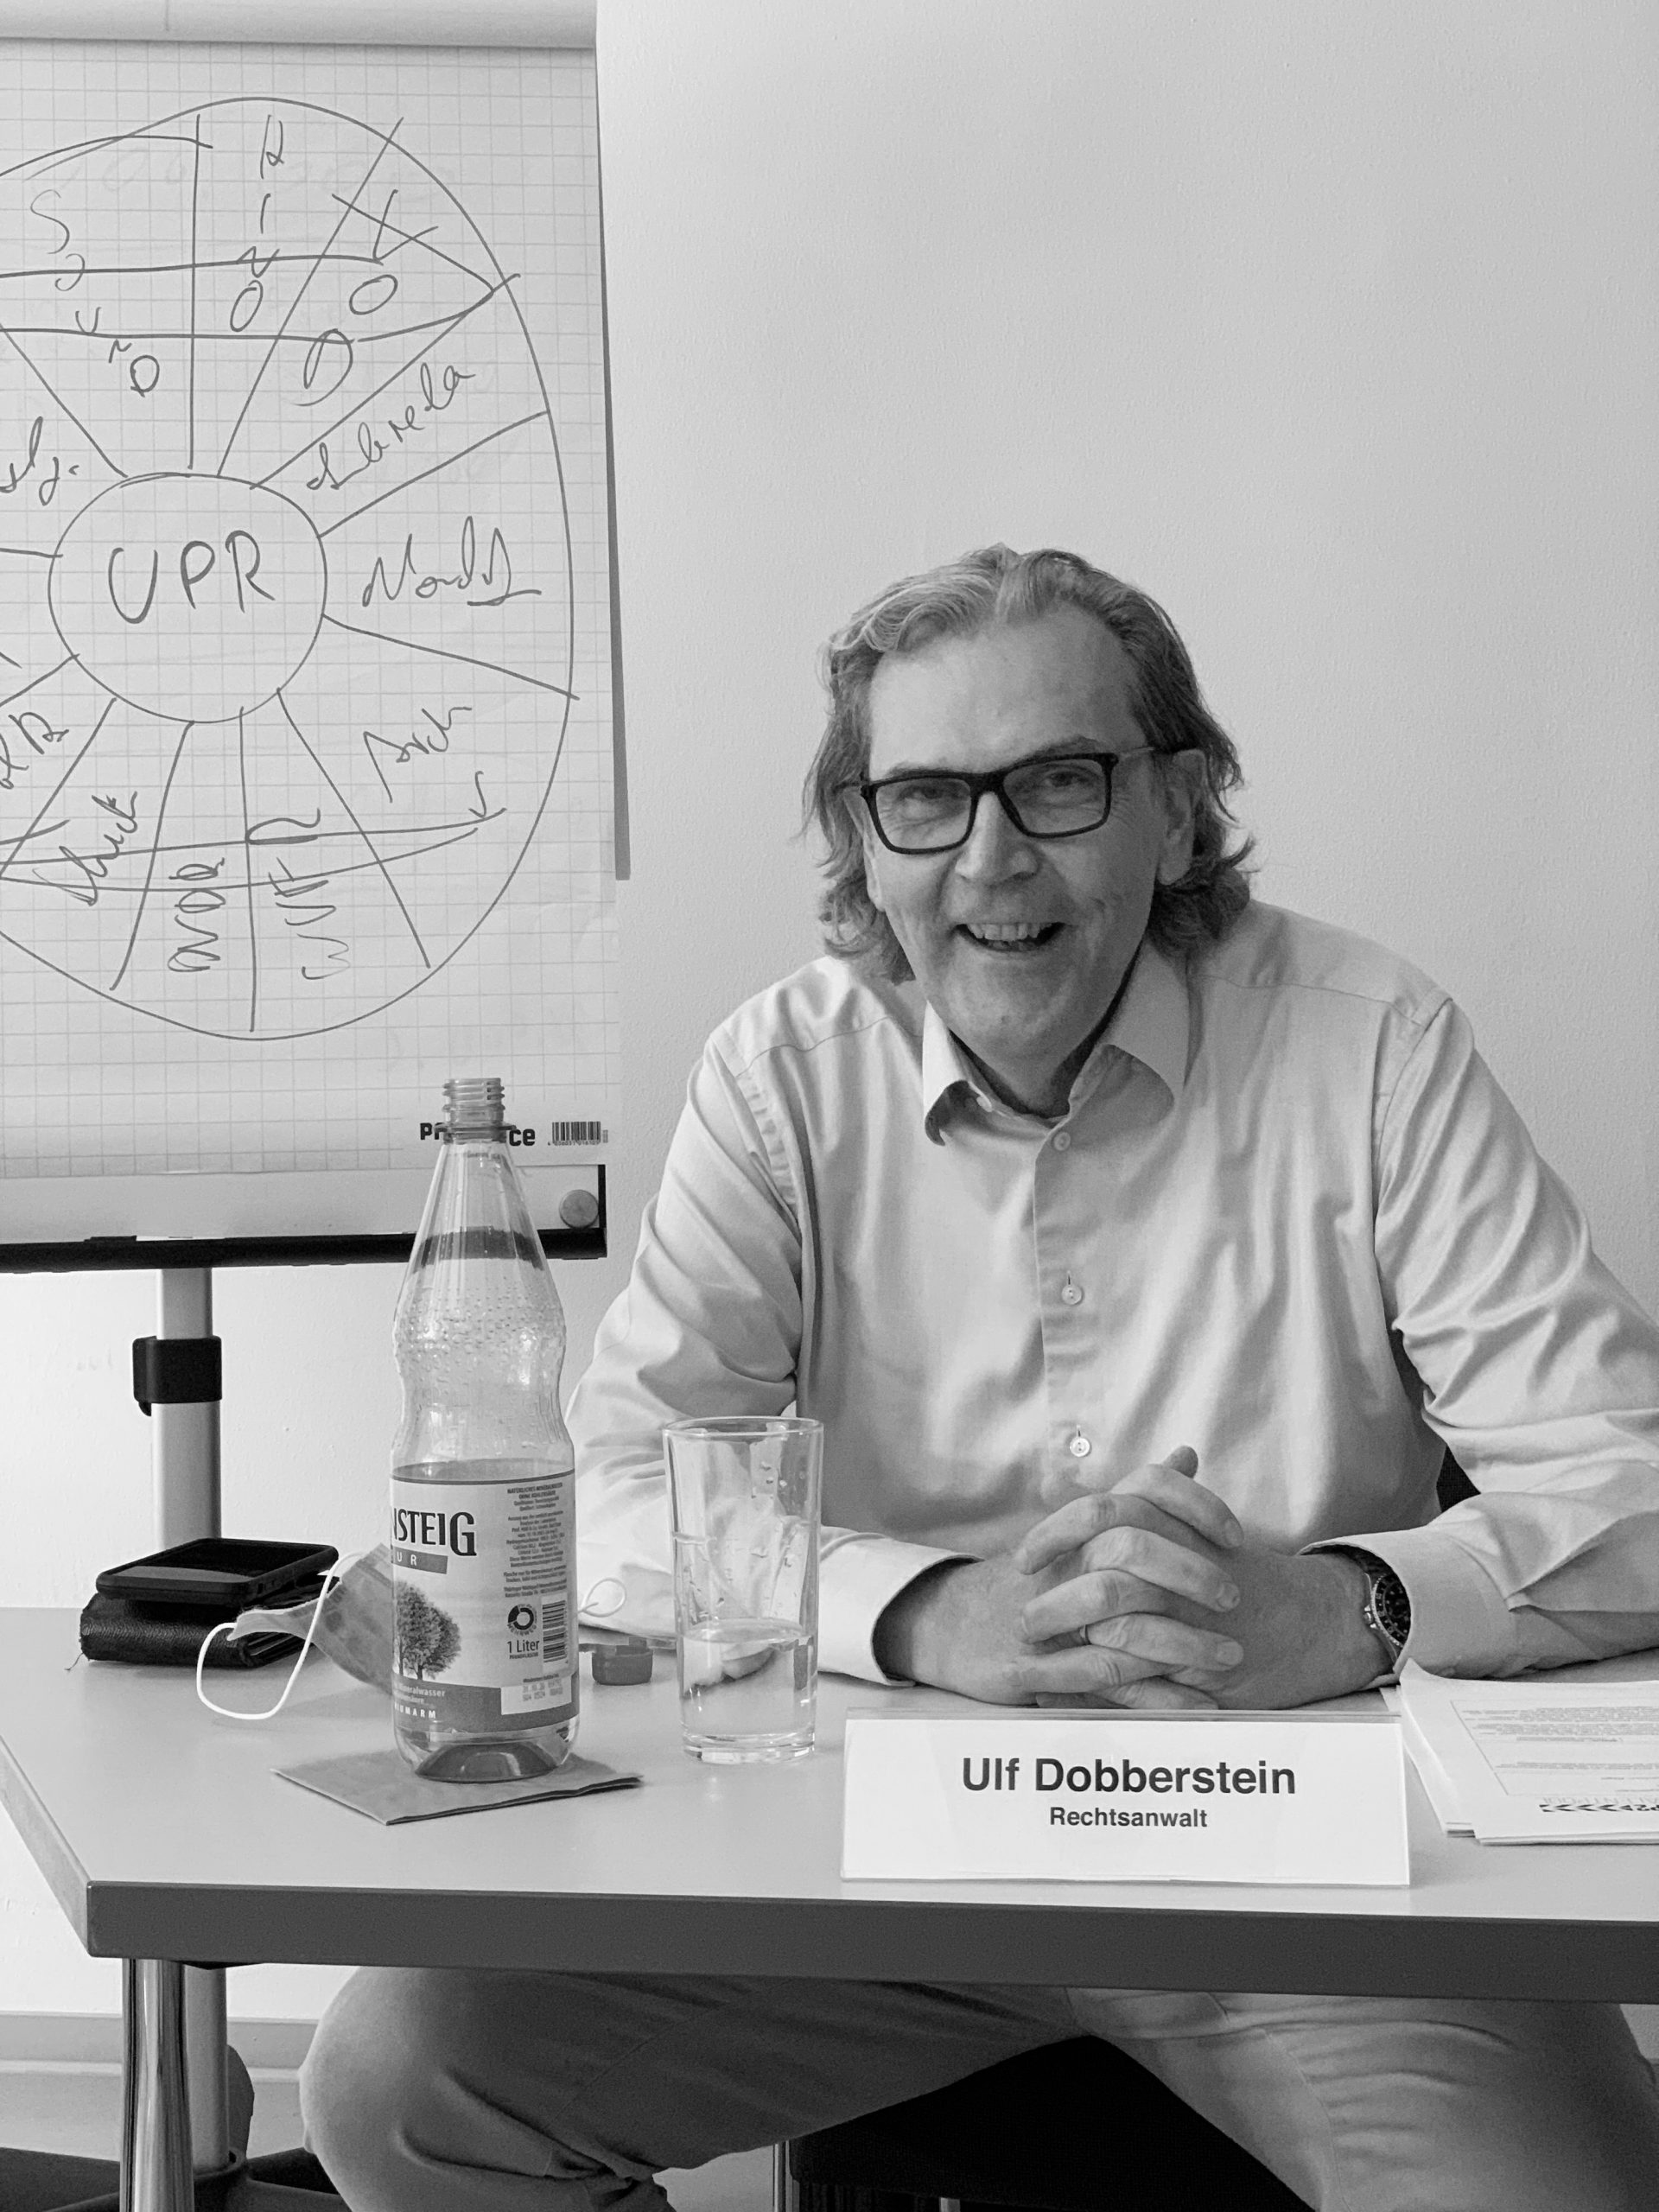 Ulf Dobberstein